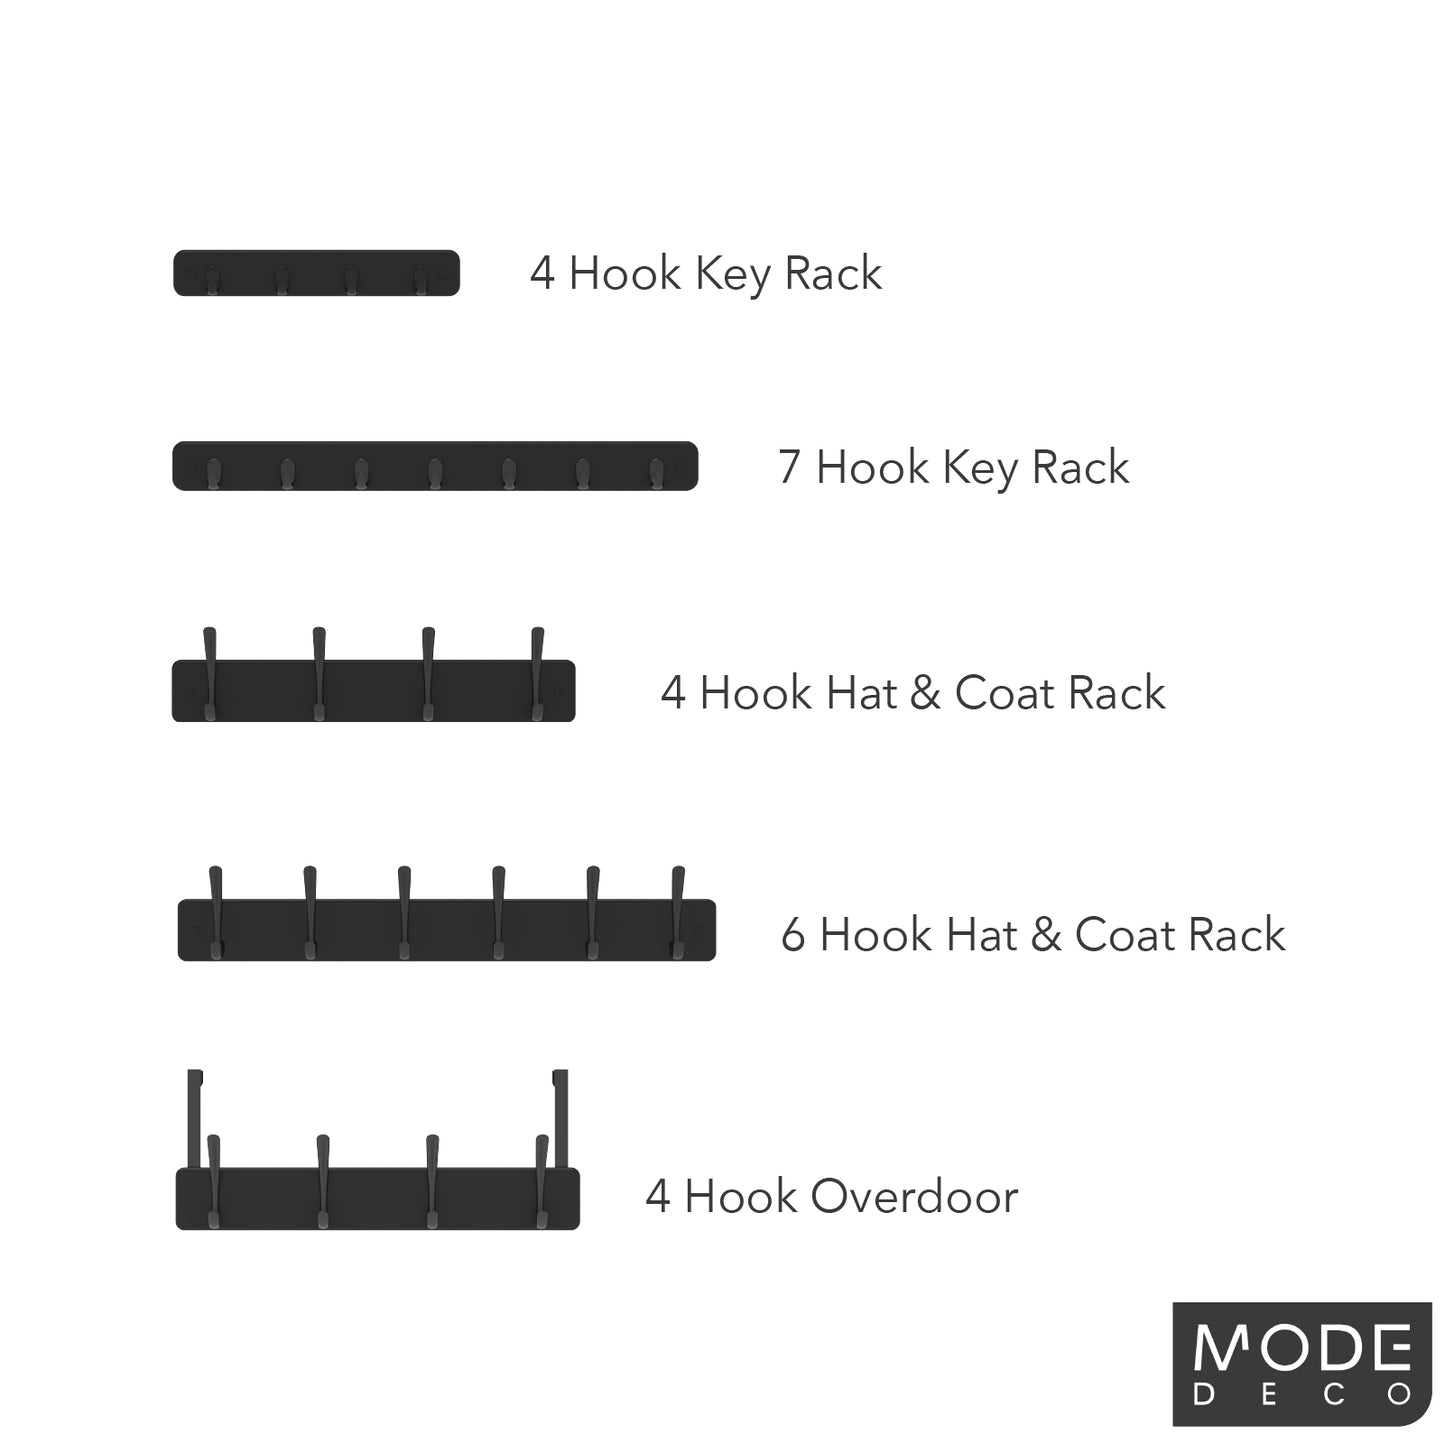 4 Black Hooks on Black Board Key Rack